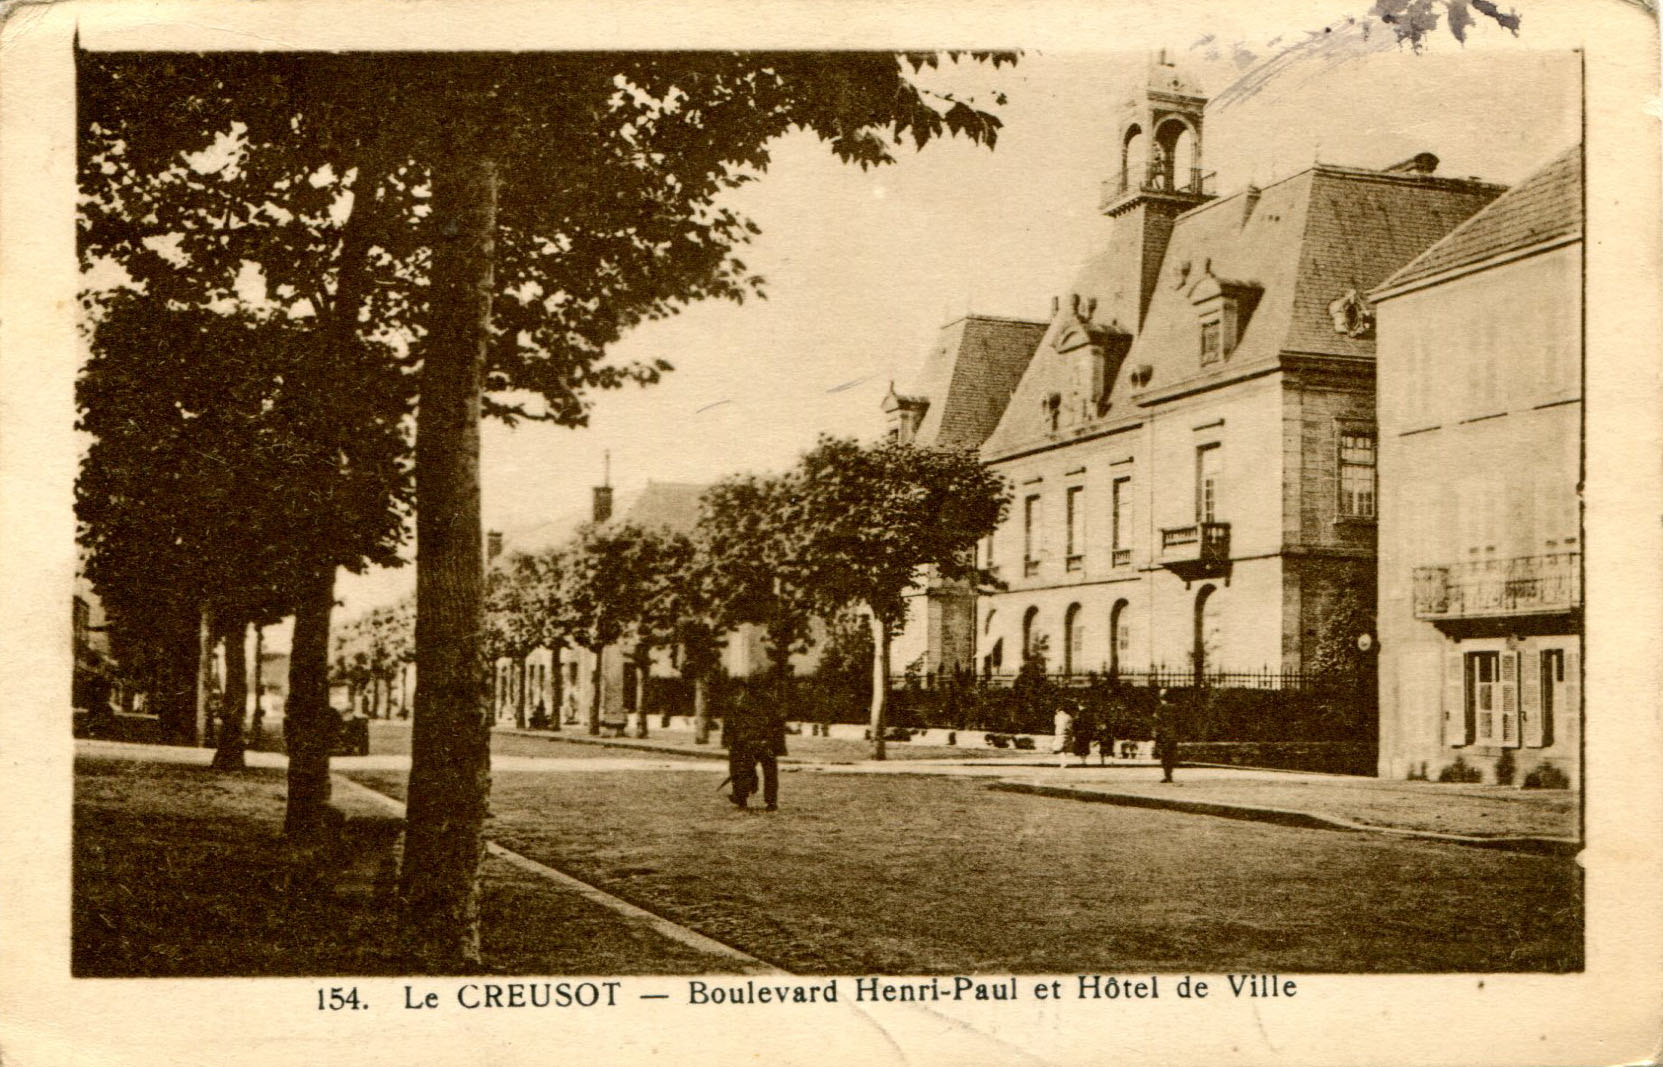 Boulevard Henri-Paul